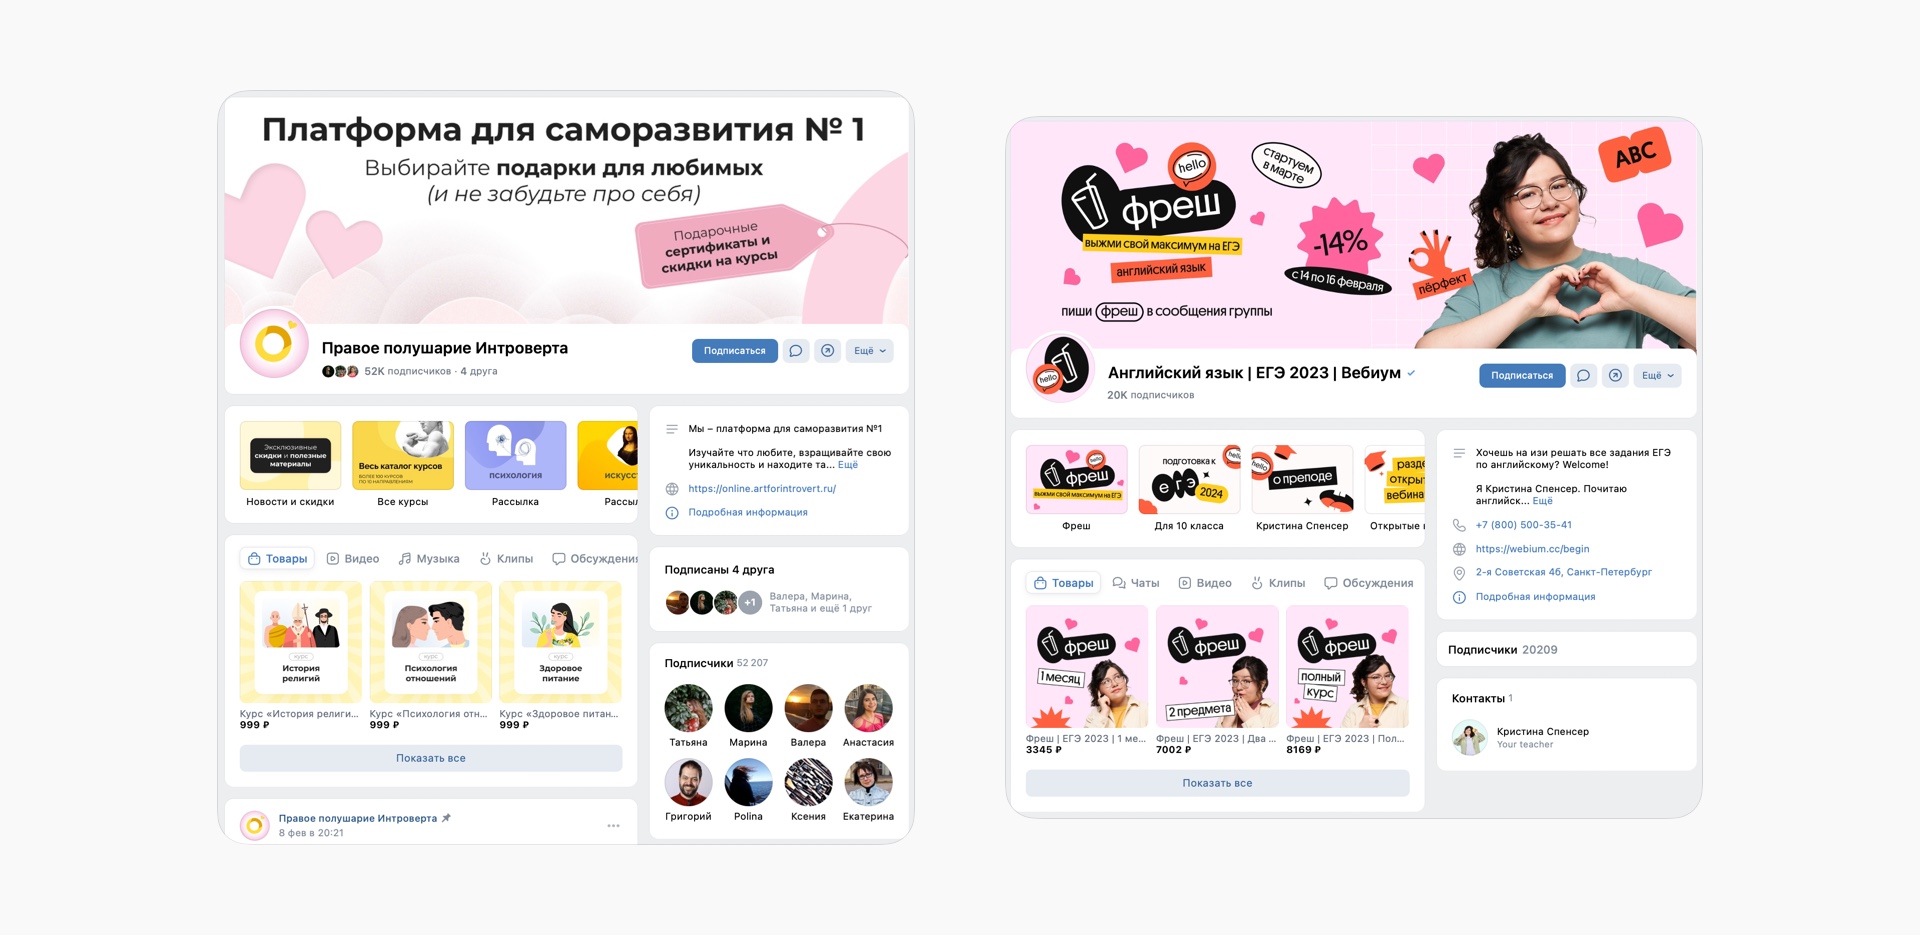 Примеры качественного визуального оформления ВКонтакте